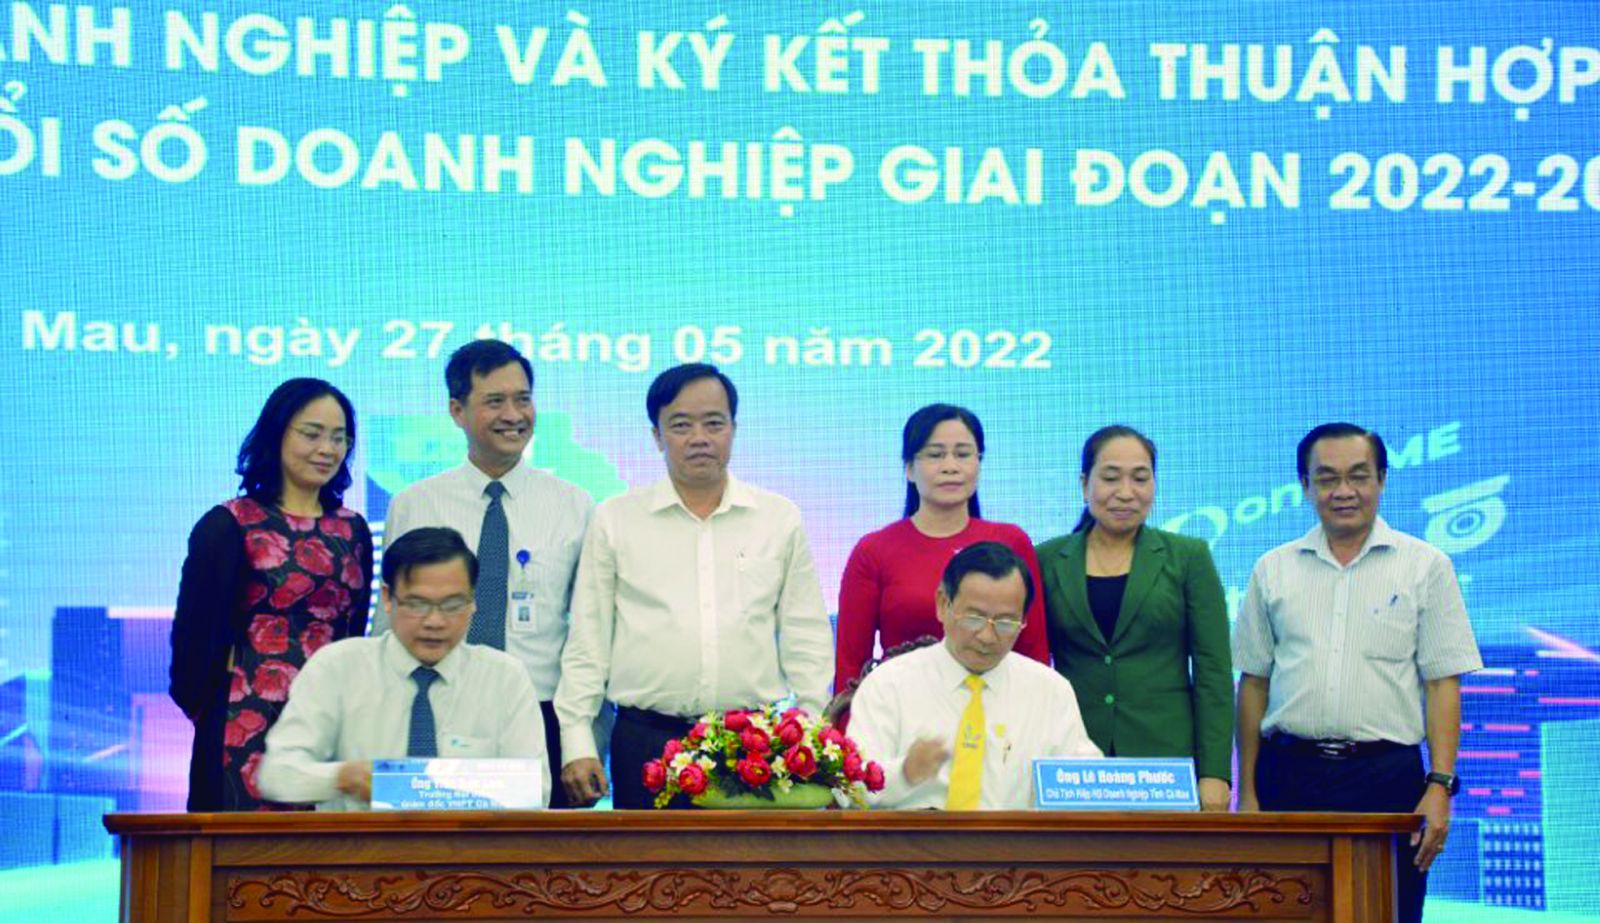 p/Đại diện Hiệp hội Doanh nghiệp tỉnh Cà Mau và VNPT Cà Mau ký kết thoả thuận hợp tác hỗ trợ chuyển đổi số doanh nghiệp giai đoạn 2022-2025.